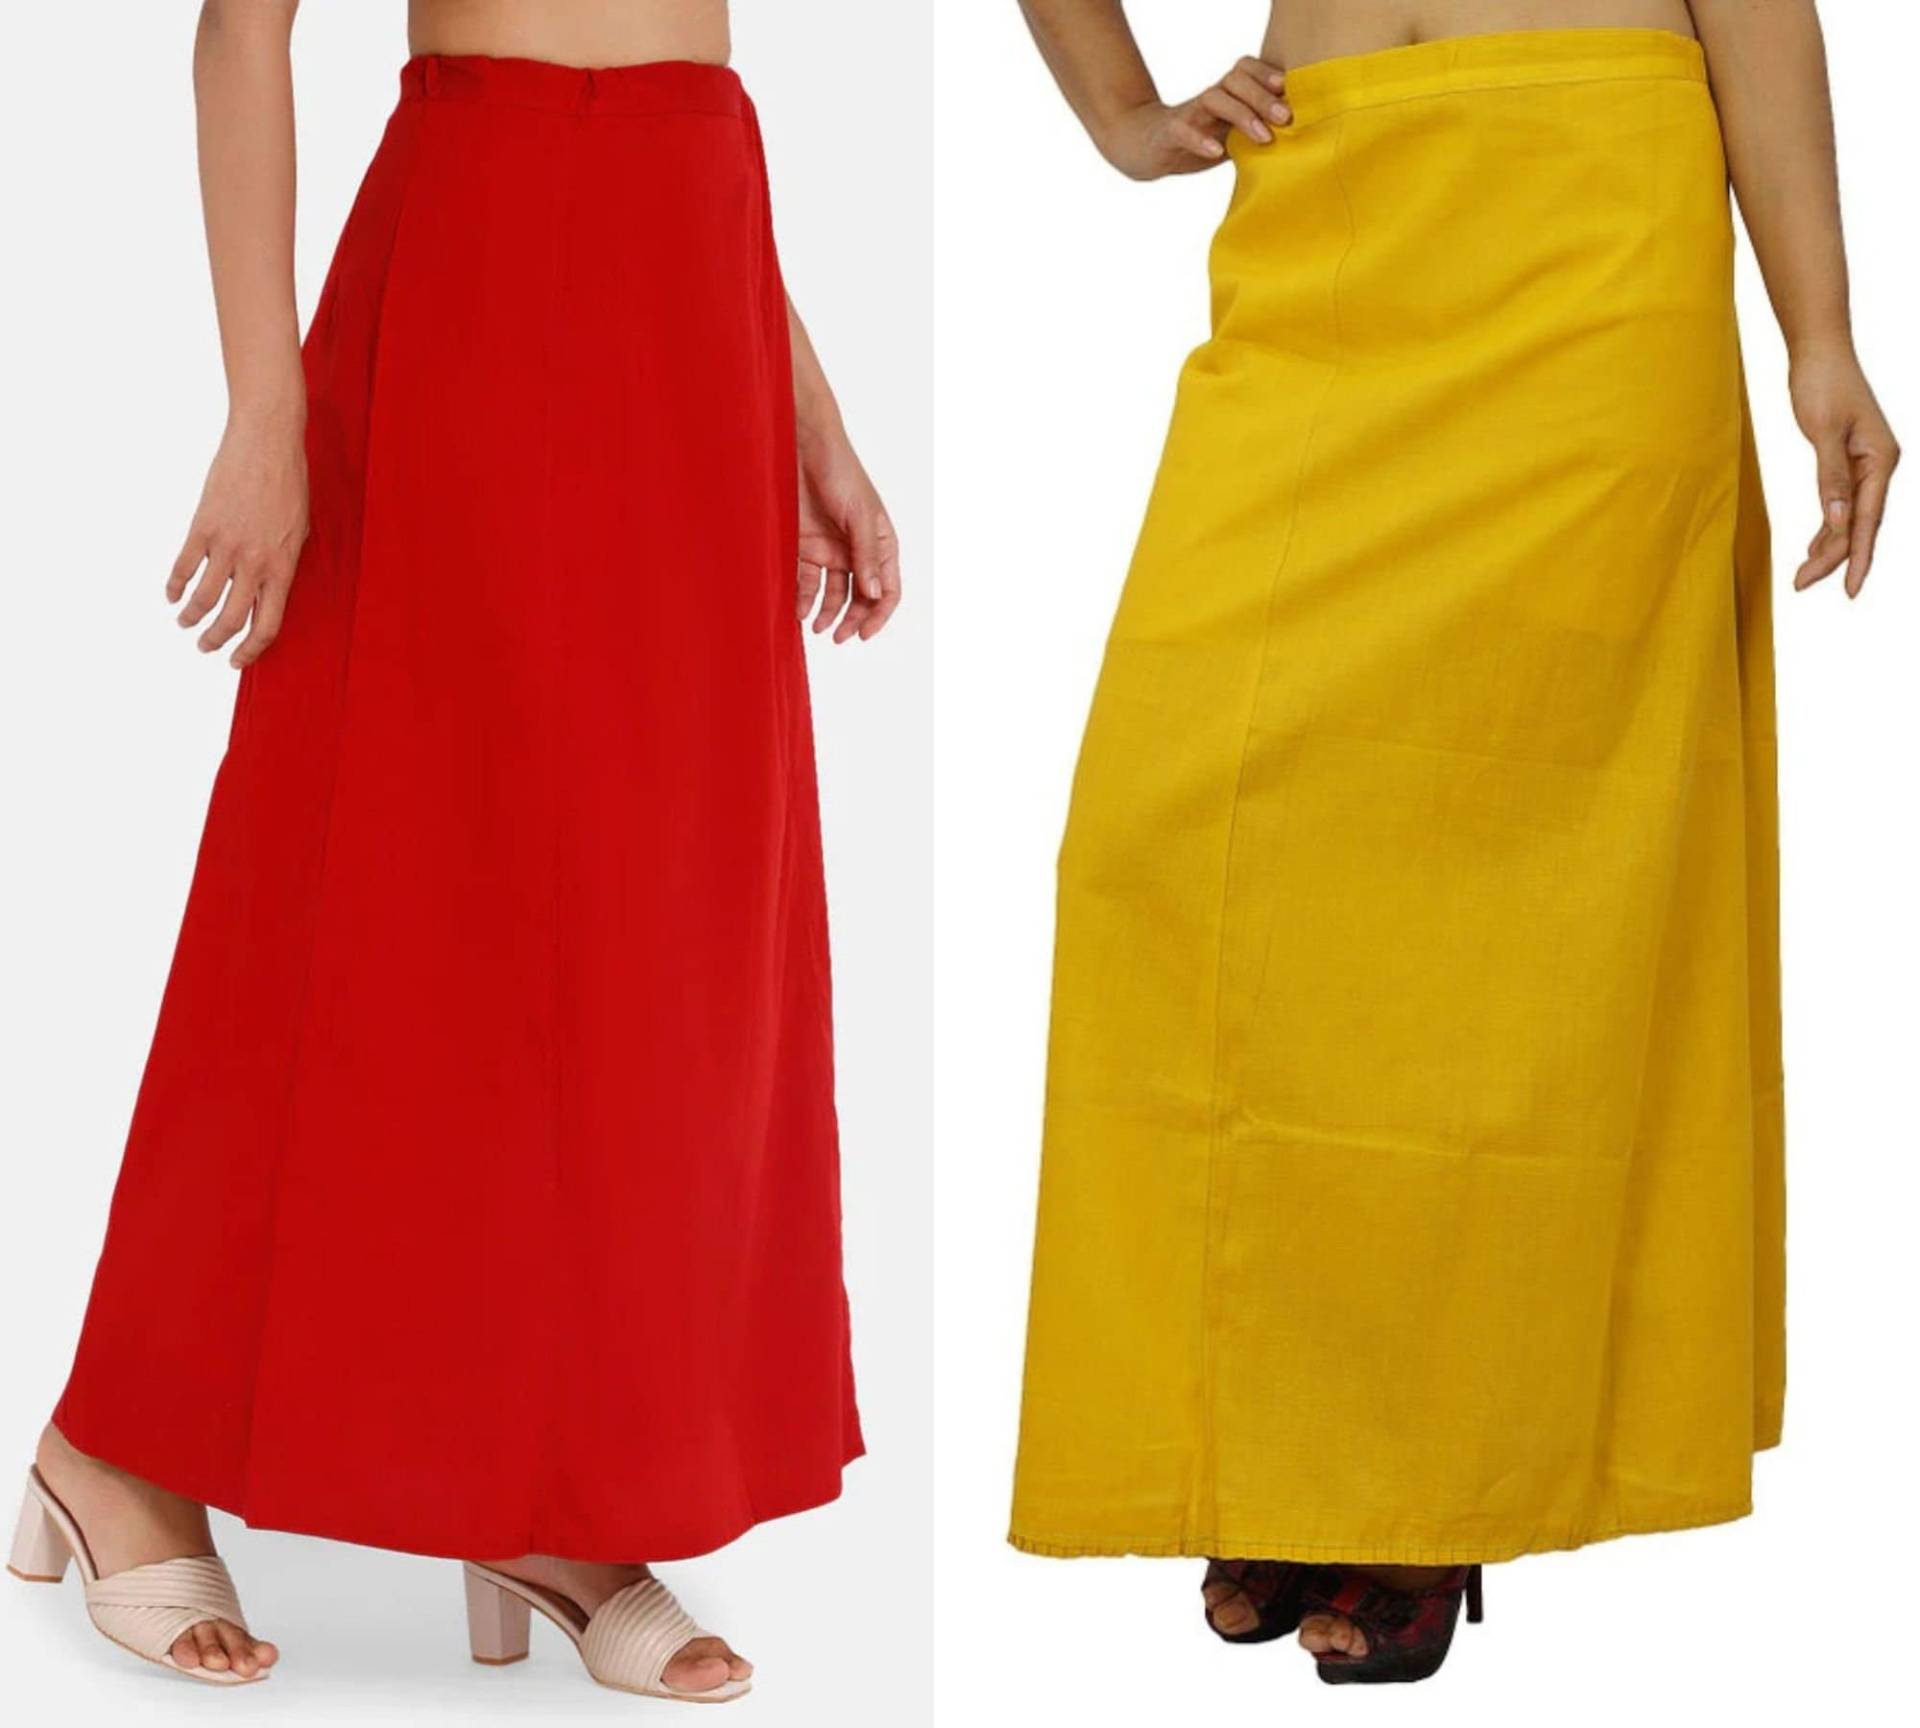 Baumwoll Saree Petticoat | Unterrock Aus 100% Baumwolle Frauen Freizeitkleidung Roter Schwarzer Usa von VaraVastram